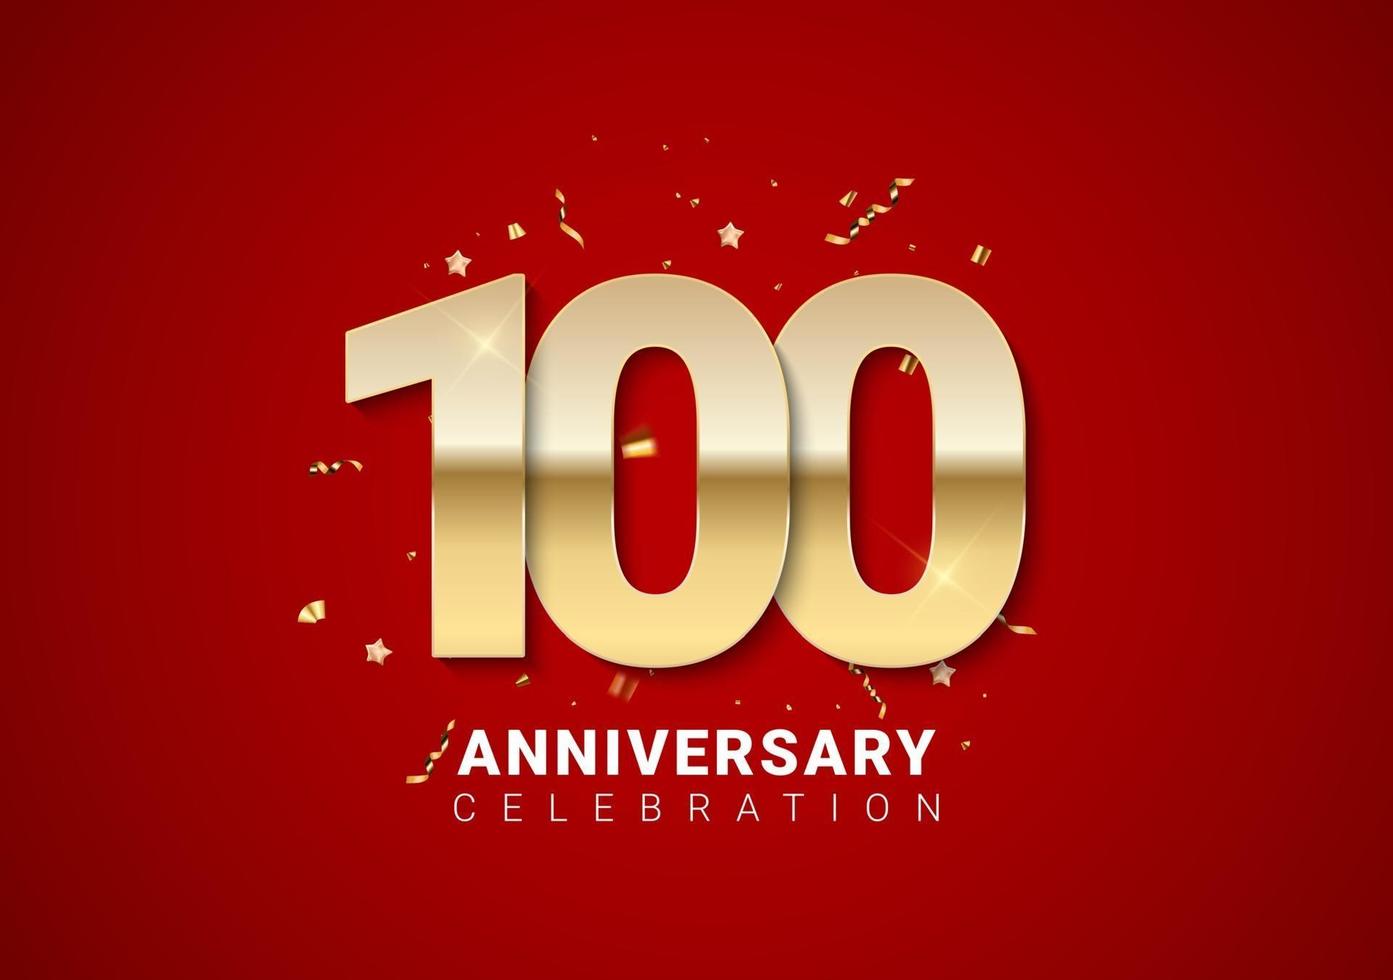 100 verjaardag achtergrond met gouden cijfers, confetti, sterren vector